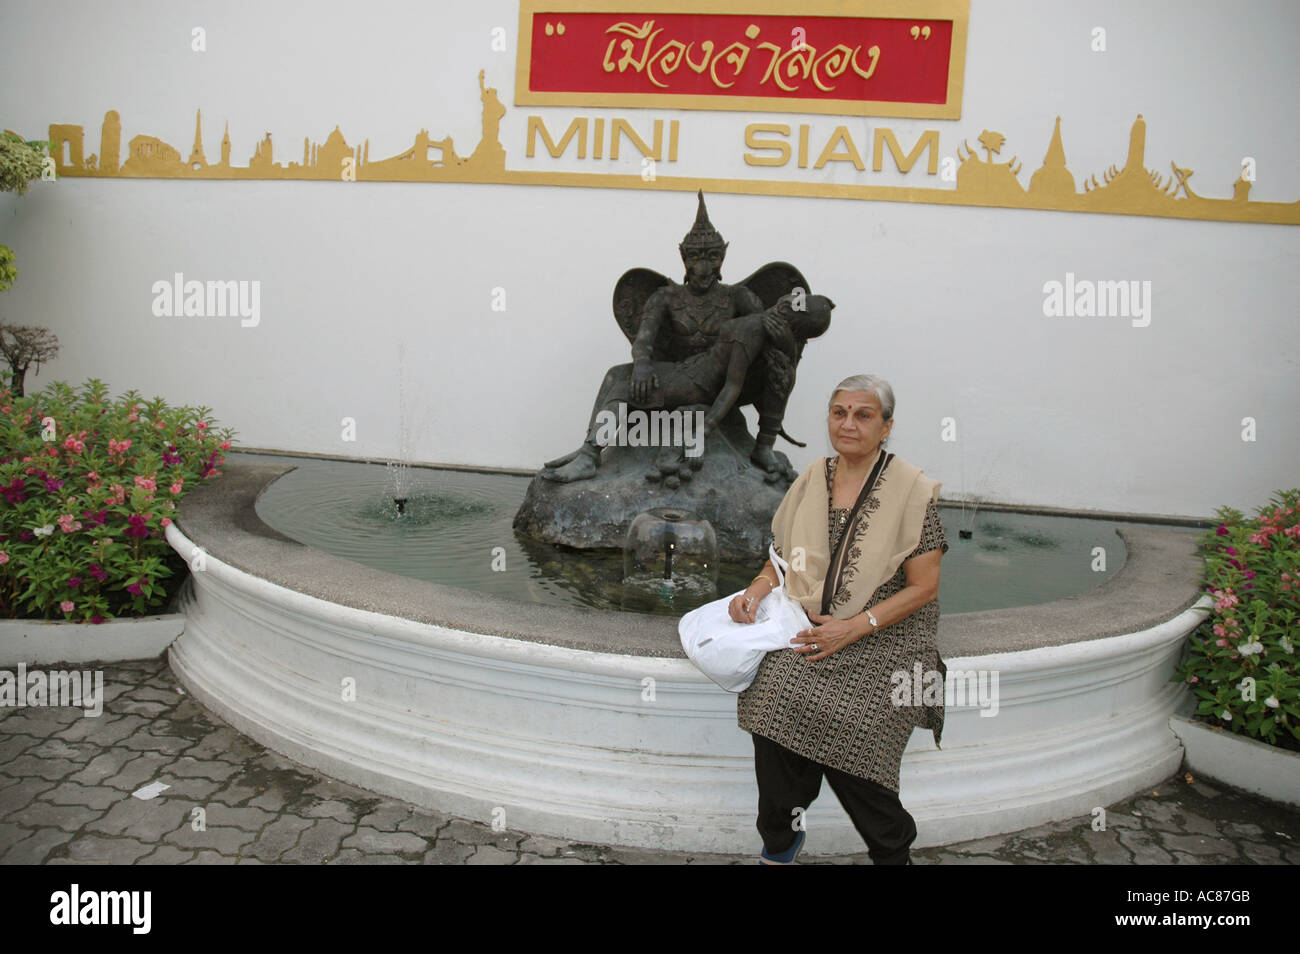 La SMA79082 vecchia donna turista indiano al mondo in miniatura Mini Siam Pattaya Thailandia Bangkok modello rilasciato dalla onorevole S Mehta Foto Stock